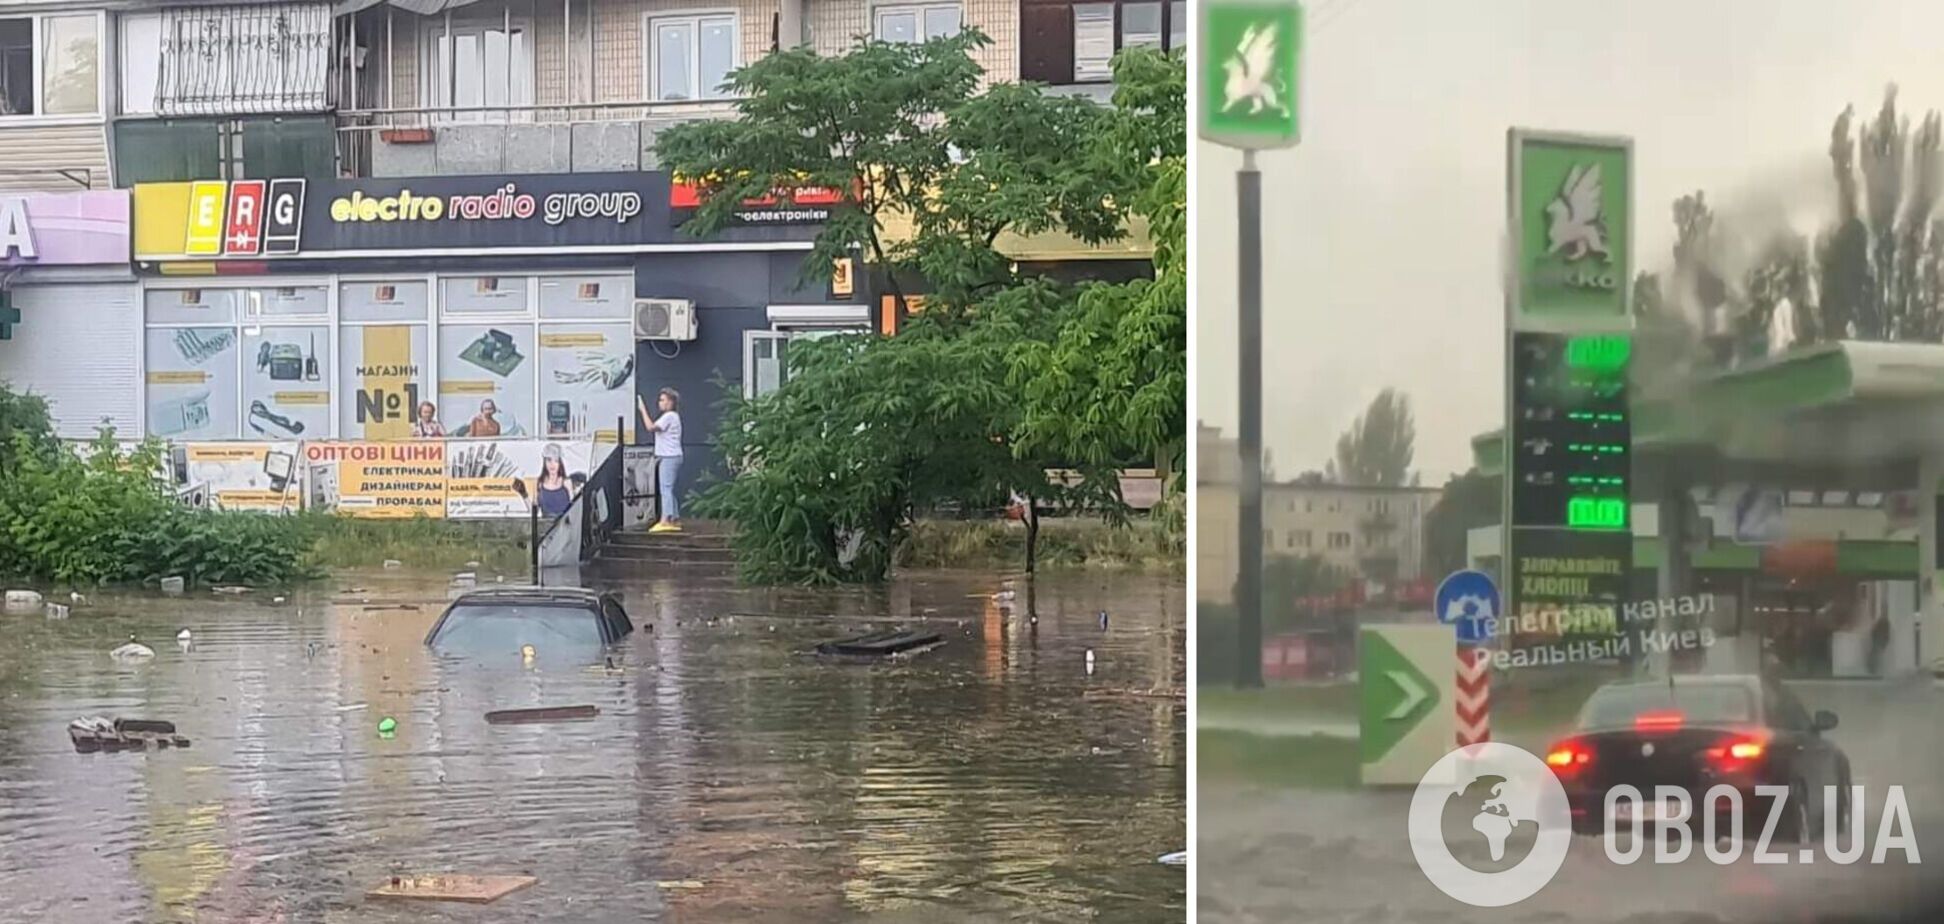 Затоплені вулиці та повалені дерева: Київ після грози пішов під воду. Фото і відео